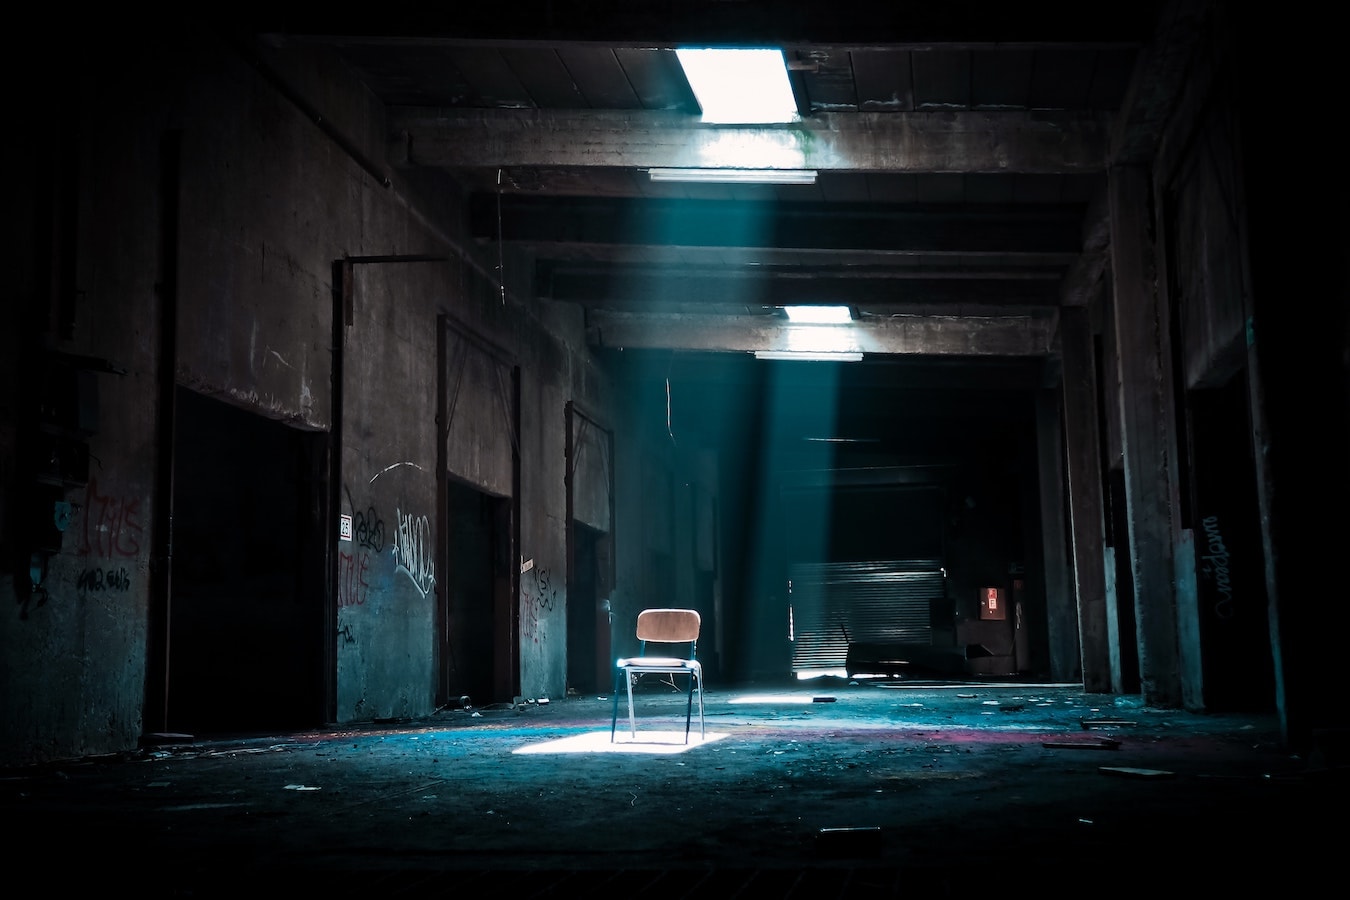 leerer Stuhl in einem dunklen Raum - Angst vor Ablehnung